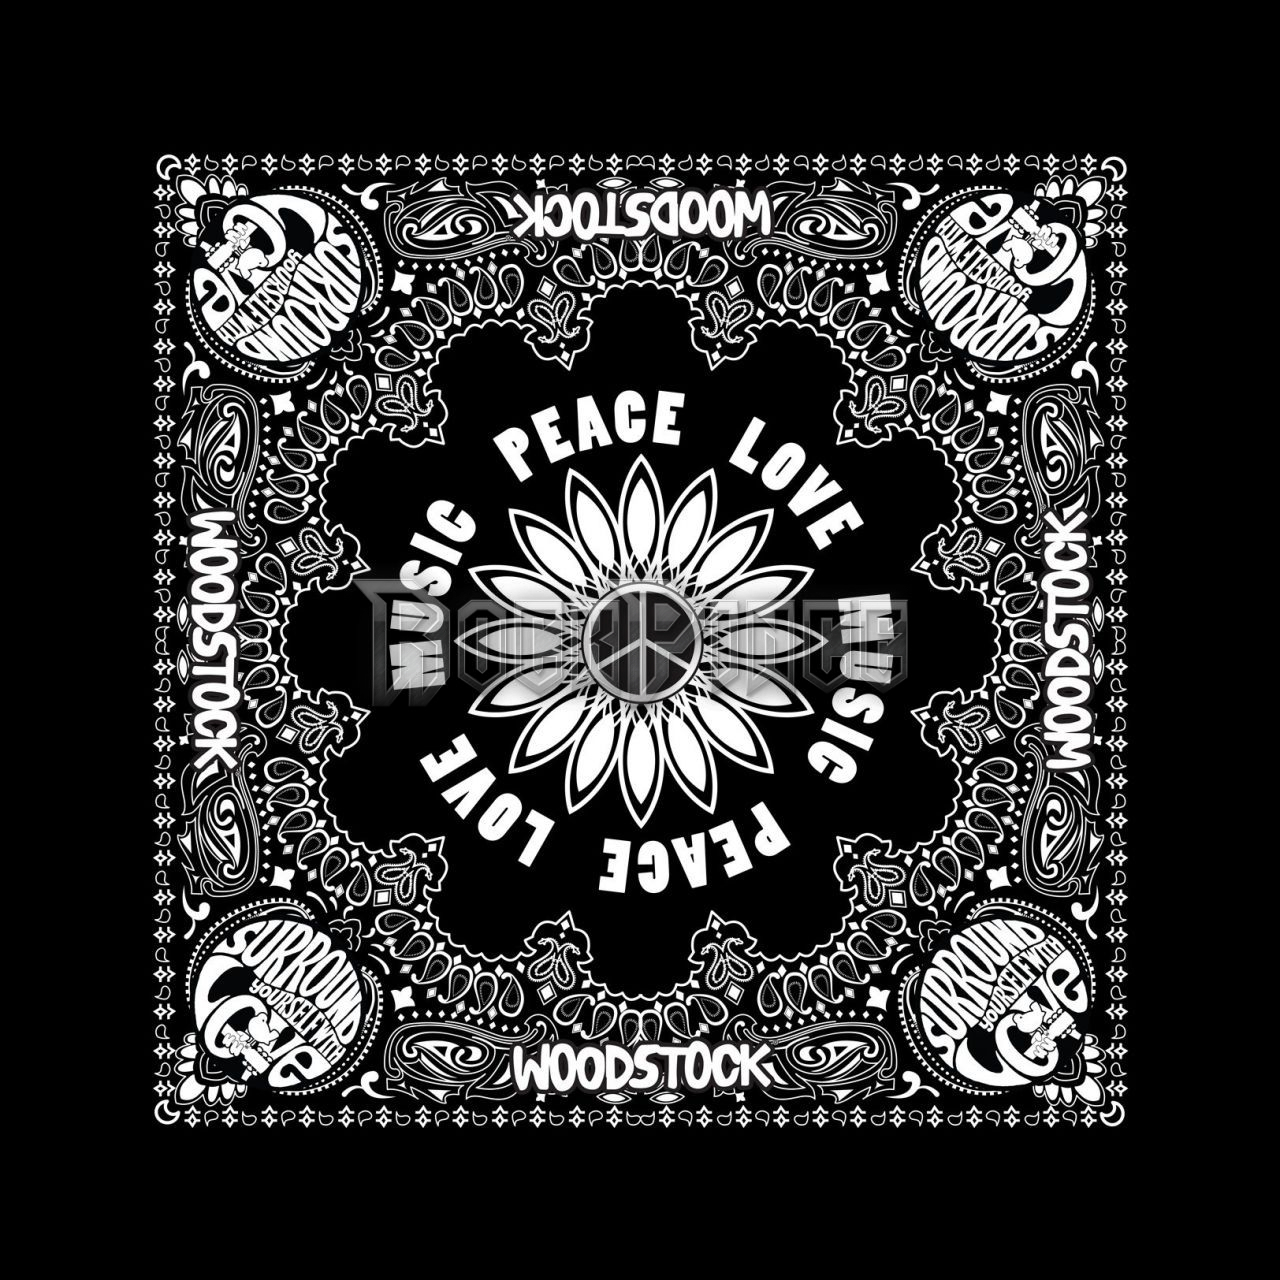 Woodstock - Peace Love Music - Kendő/Bandana - B063